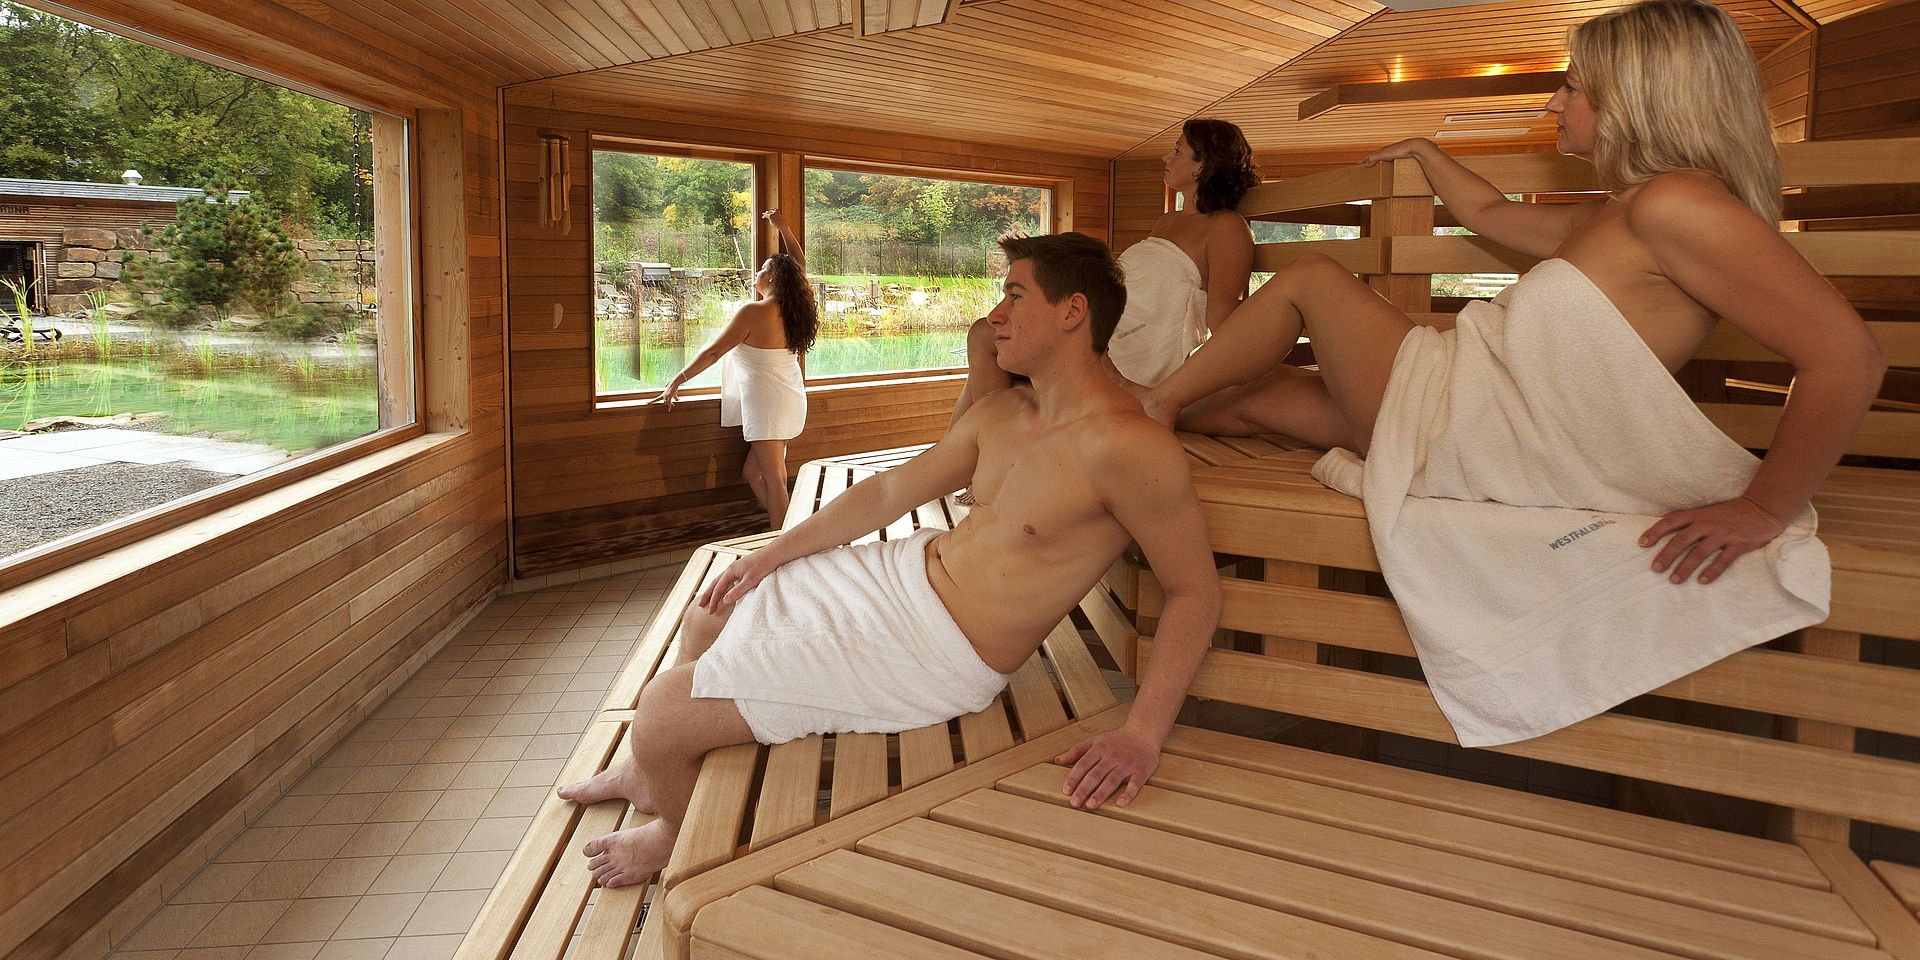 2 befreundete paare zusammen nackt sauna hotel